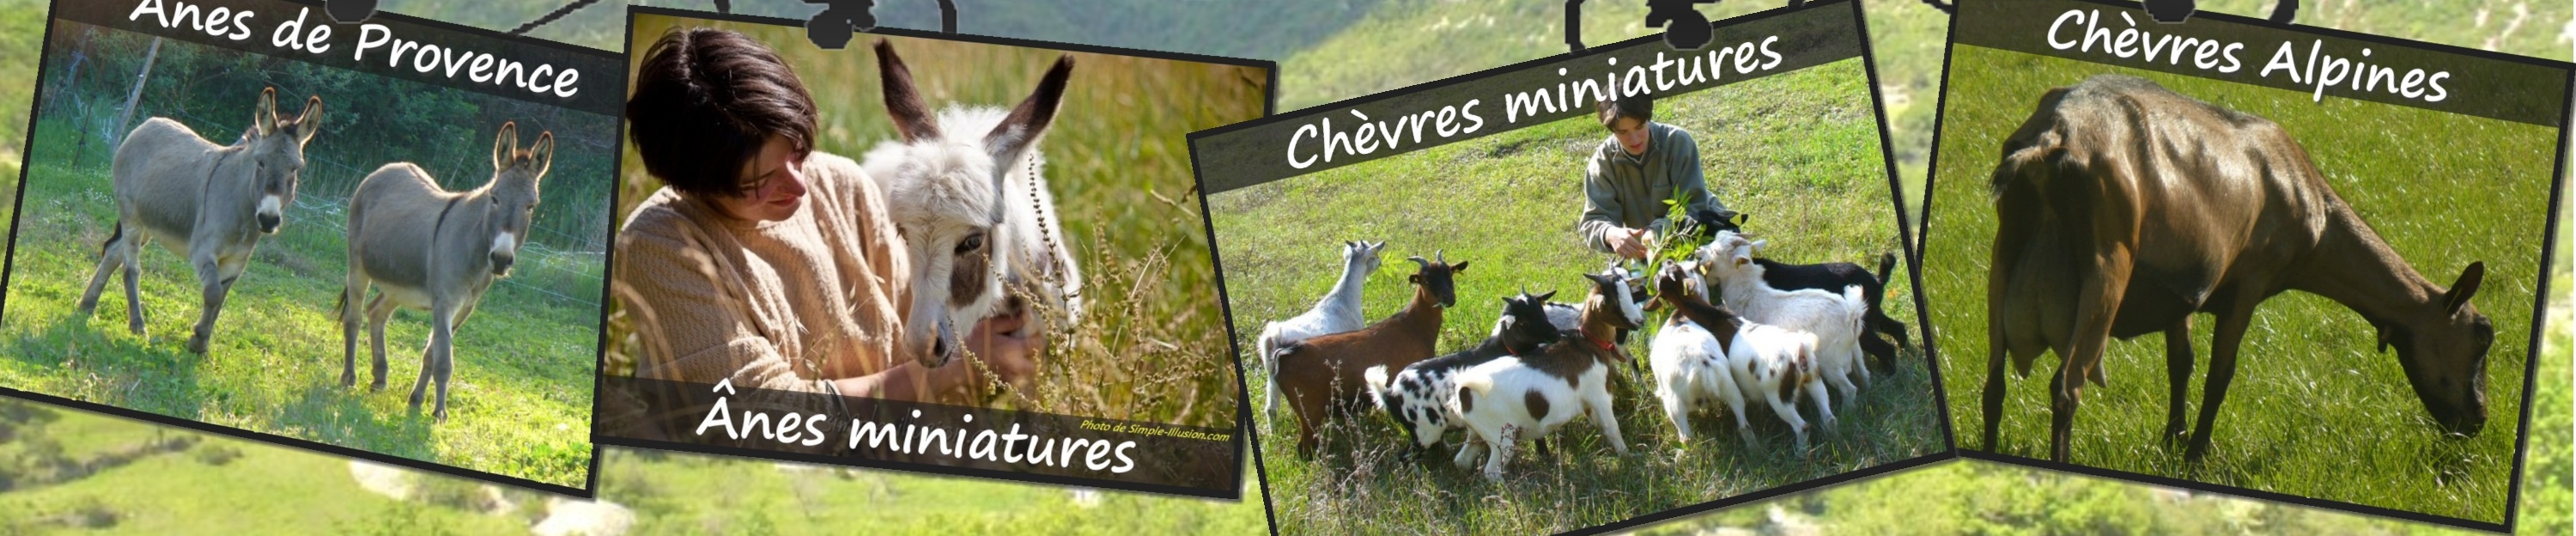 www.ferme-des-tourelles.net - Fin pastoralisme minichèvres 2016